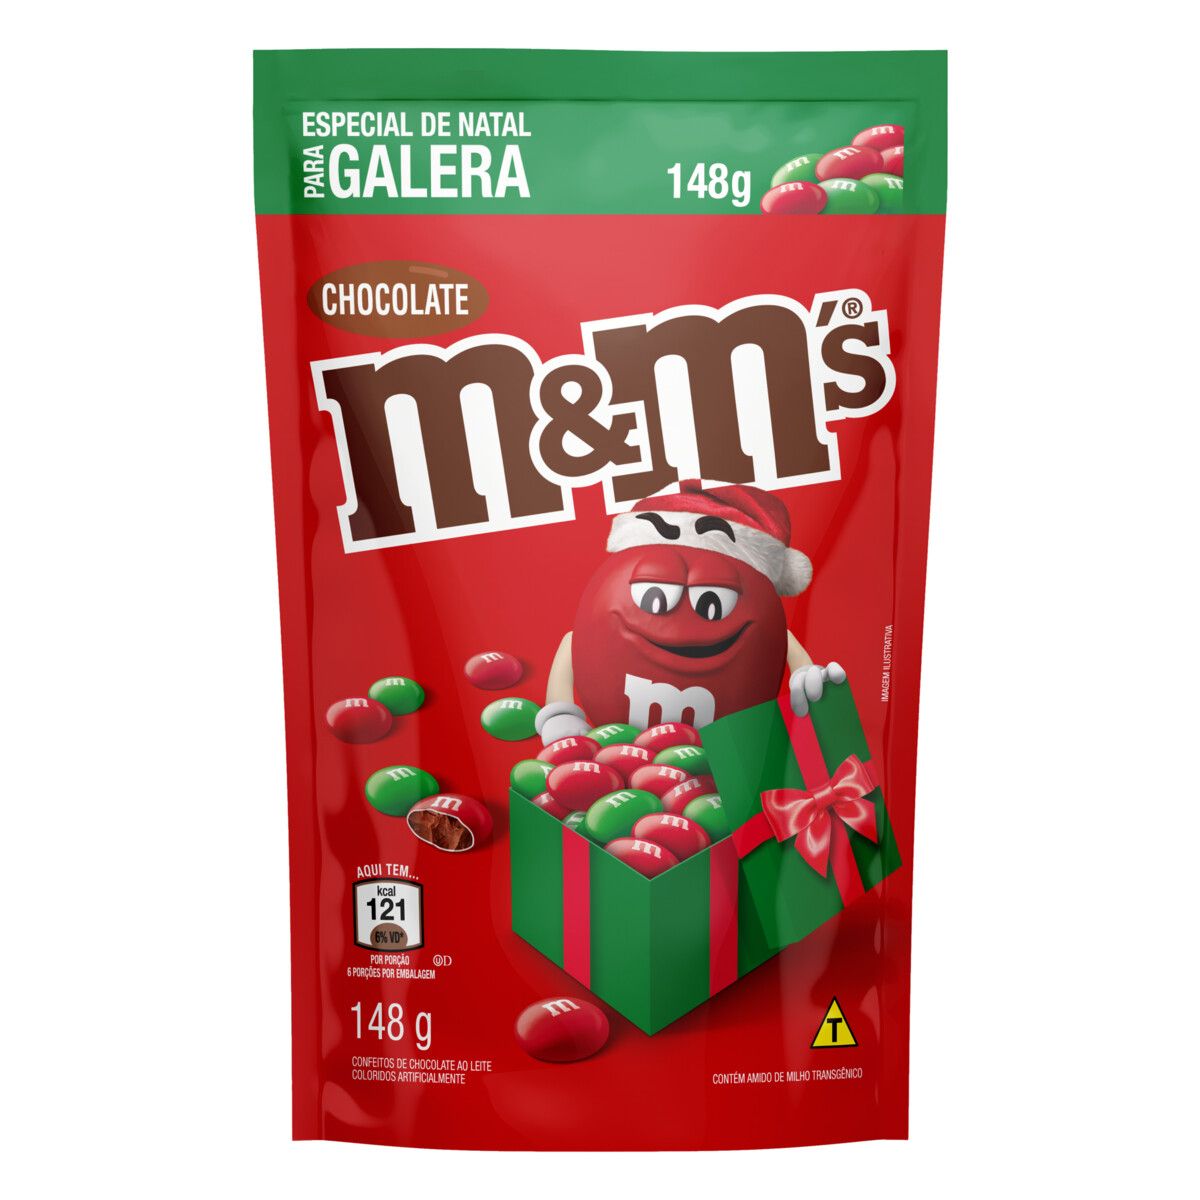 Confeito de Chocolate ao Leite M&M's Sachê 148g Especial de Natal